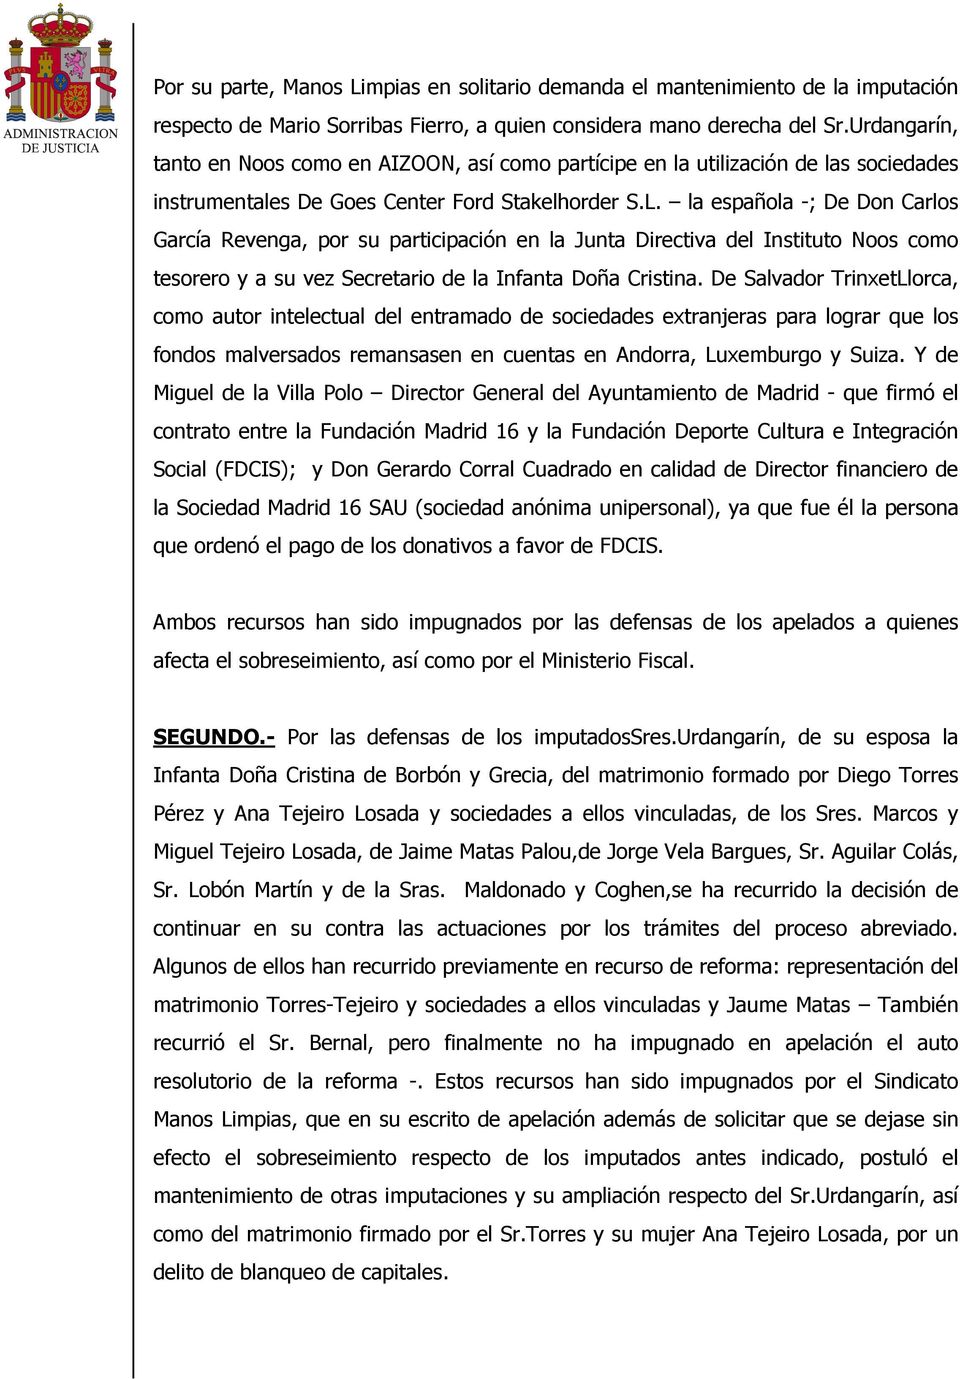 la española -; De Don Carlos García Revenga, por su participación en la Junta Directiva del Instituto Noos como tesorero y a su vez Secretario de la Infanta Doña Cristina.